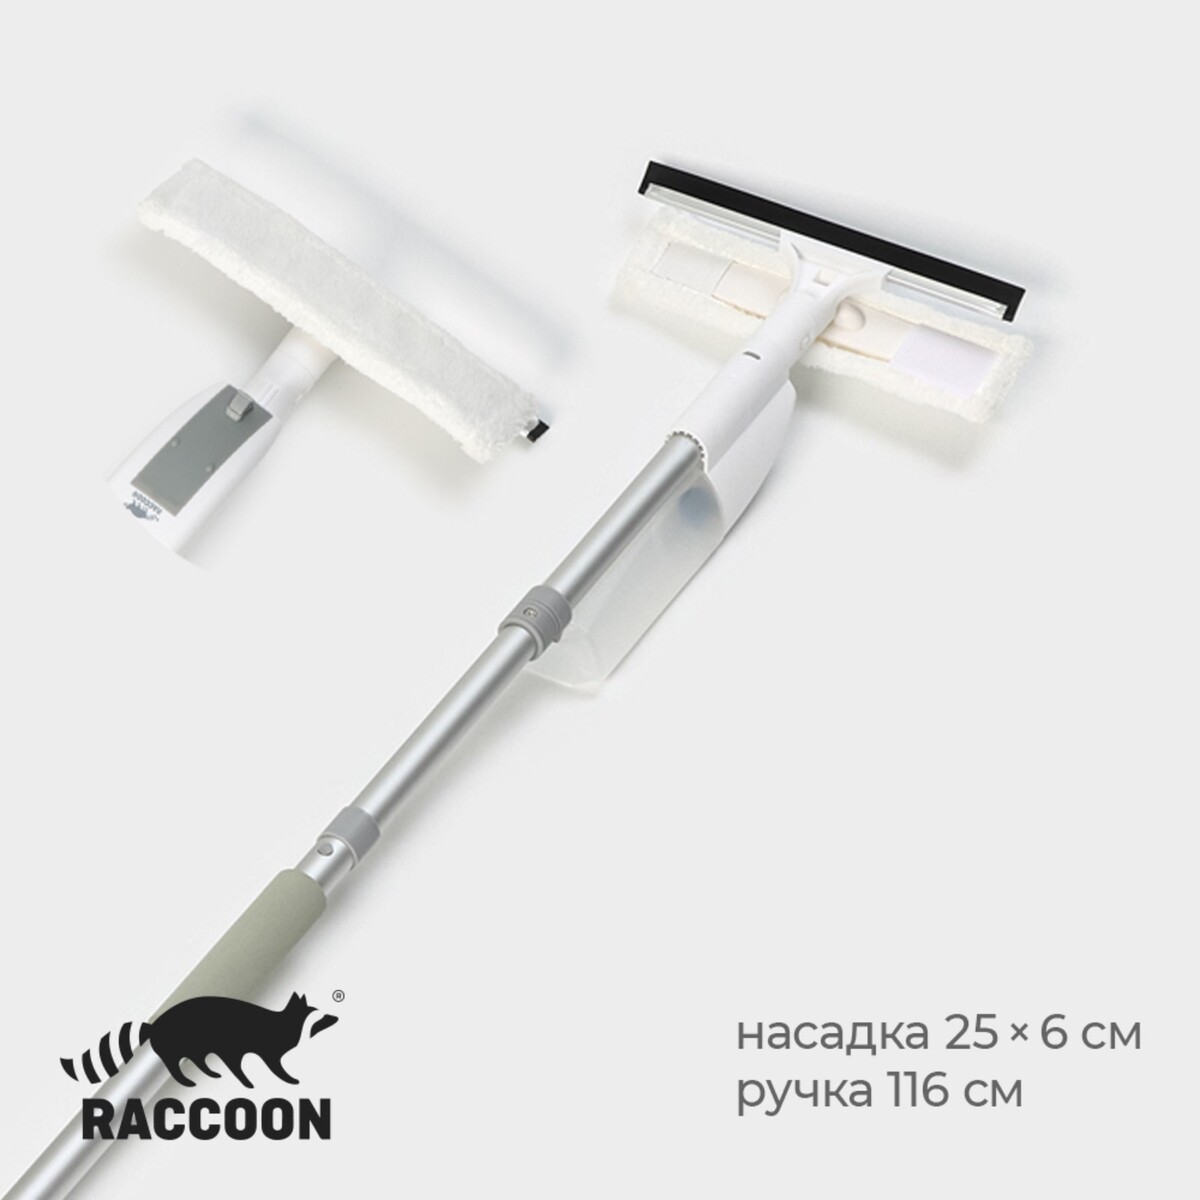 Оконная швабра с распылителем raccoon, алюминиевая ручка, длина 116 см, сгон 25 см, насадка 25×6 см ручка фабрика замков 2wh ps оконная двухсторонняя 114310